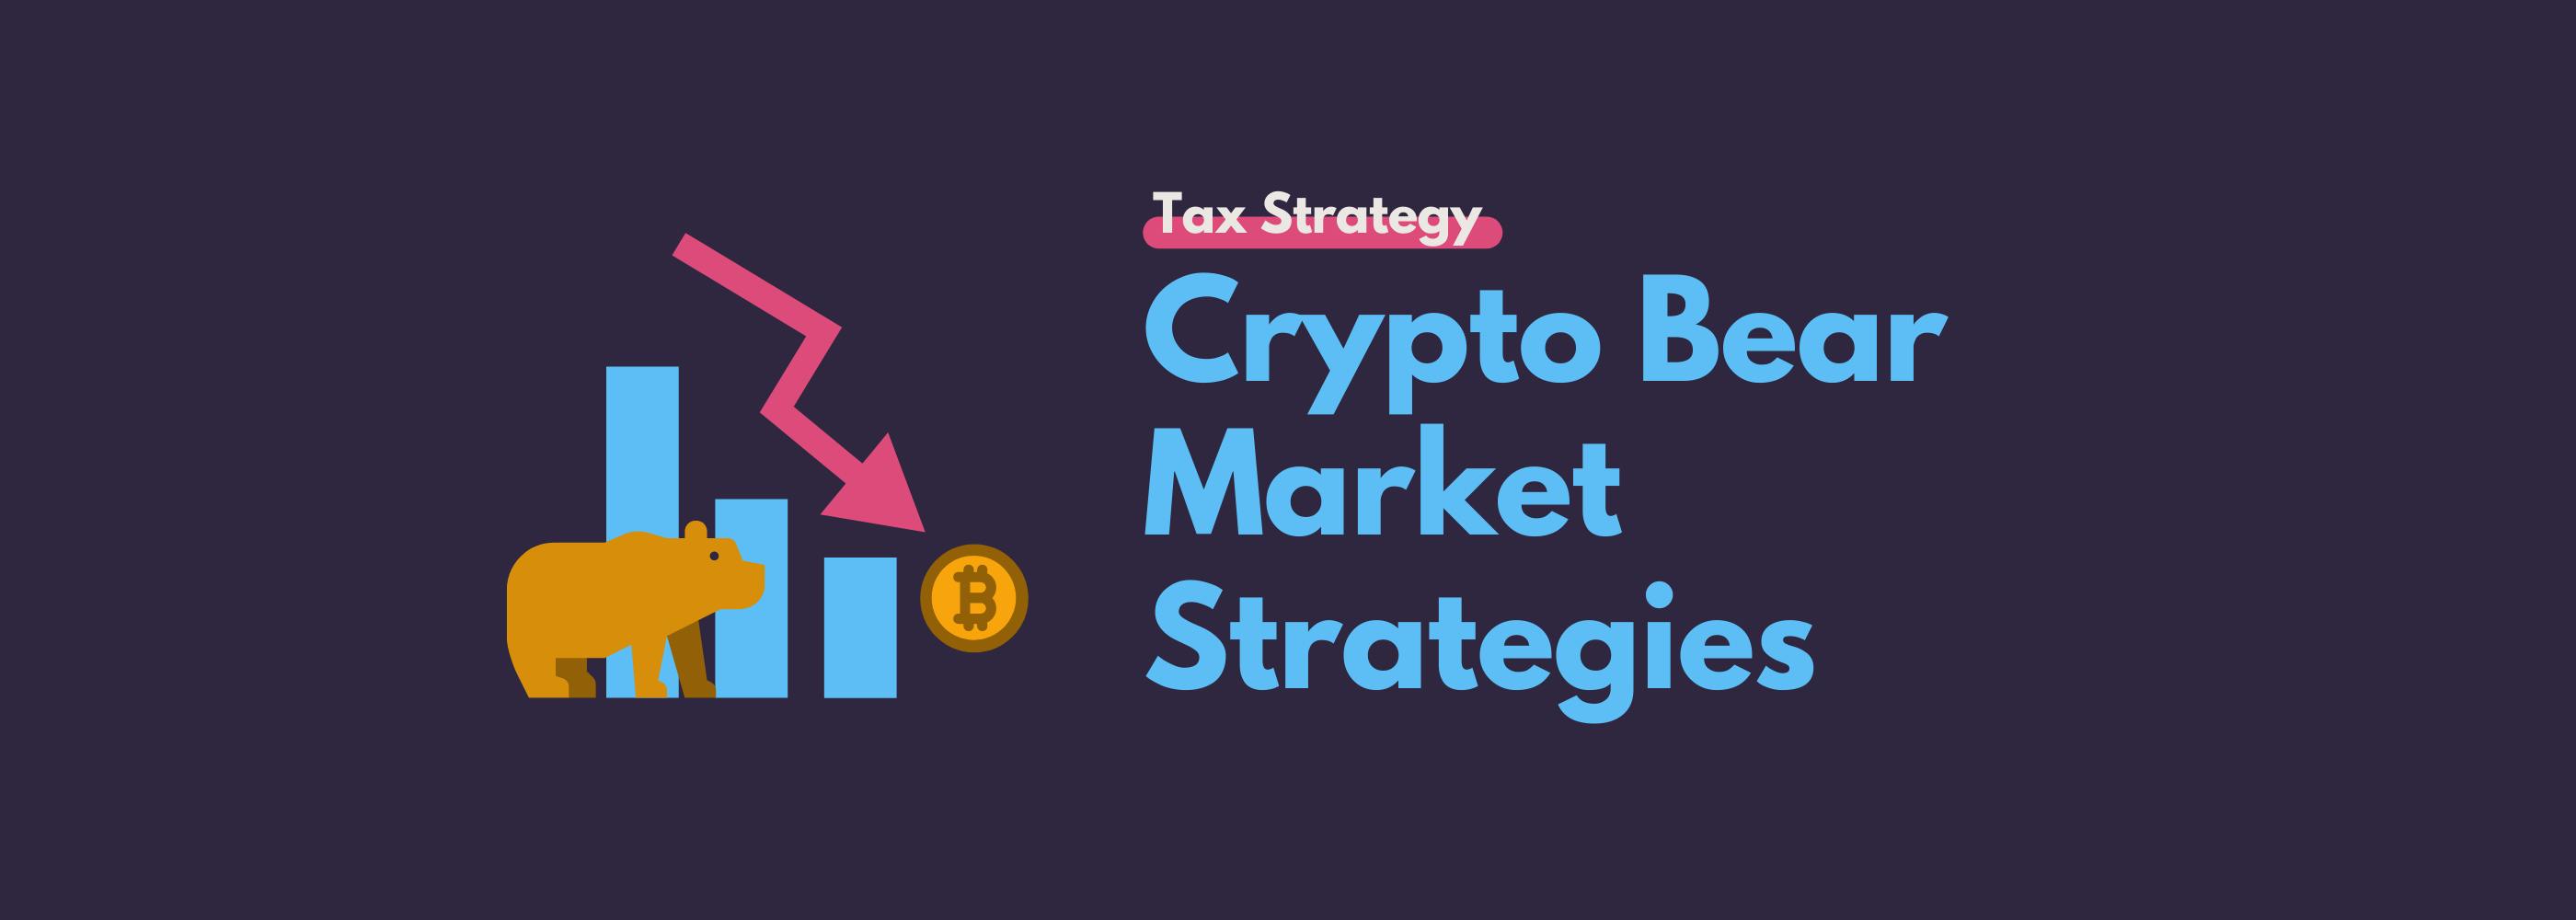 Crypto bear market strategies